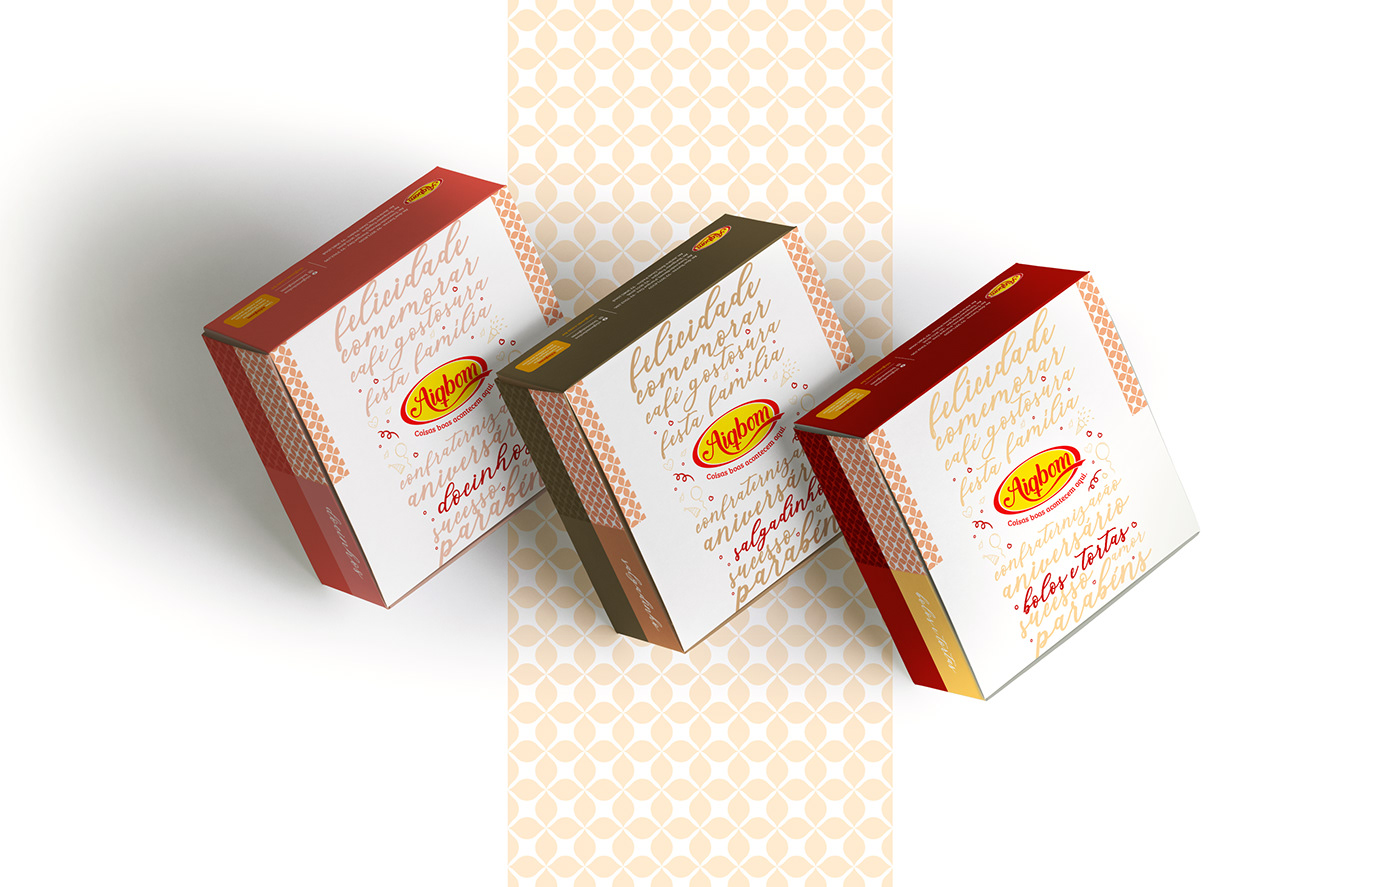 bolo box branding  Caixa delivery design de produto embalagem manaus package packing